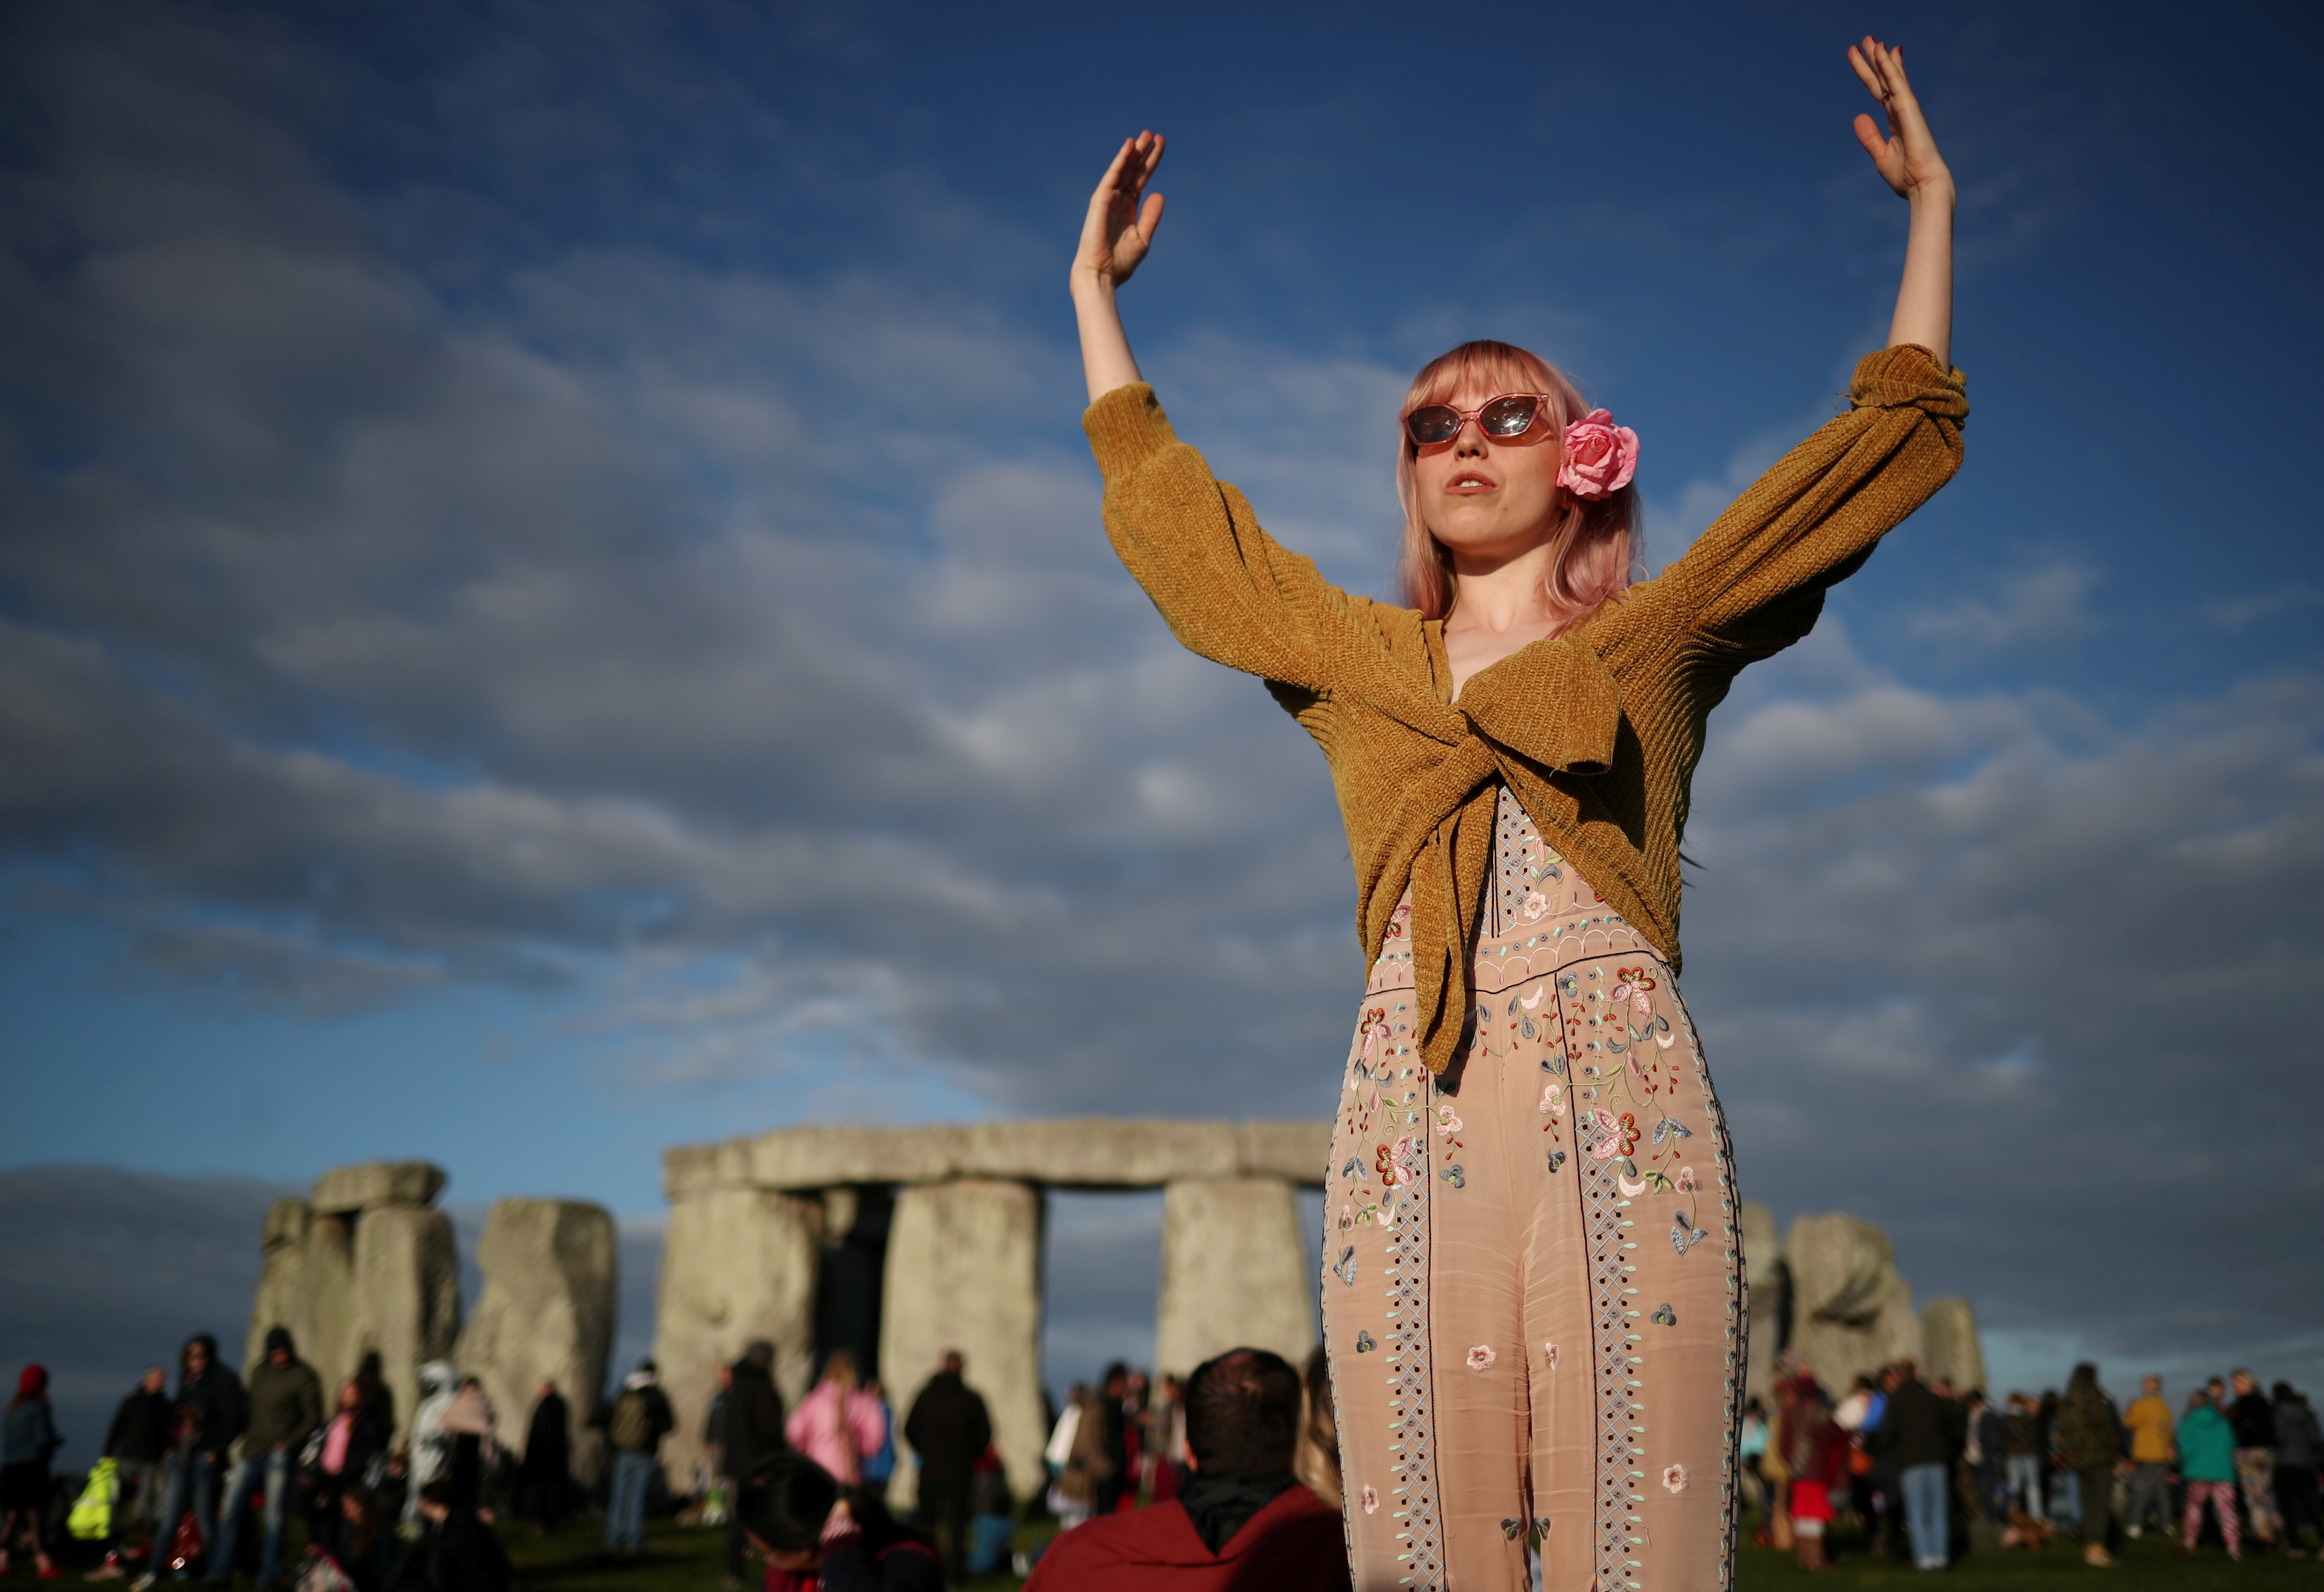 Es uno de los sitios más famosos de Gran Bretaña que atrae a numerosos turistas y personas que buscan establecer una conexión espiritual con la naturaleza  (Foto: REUTERS)